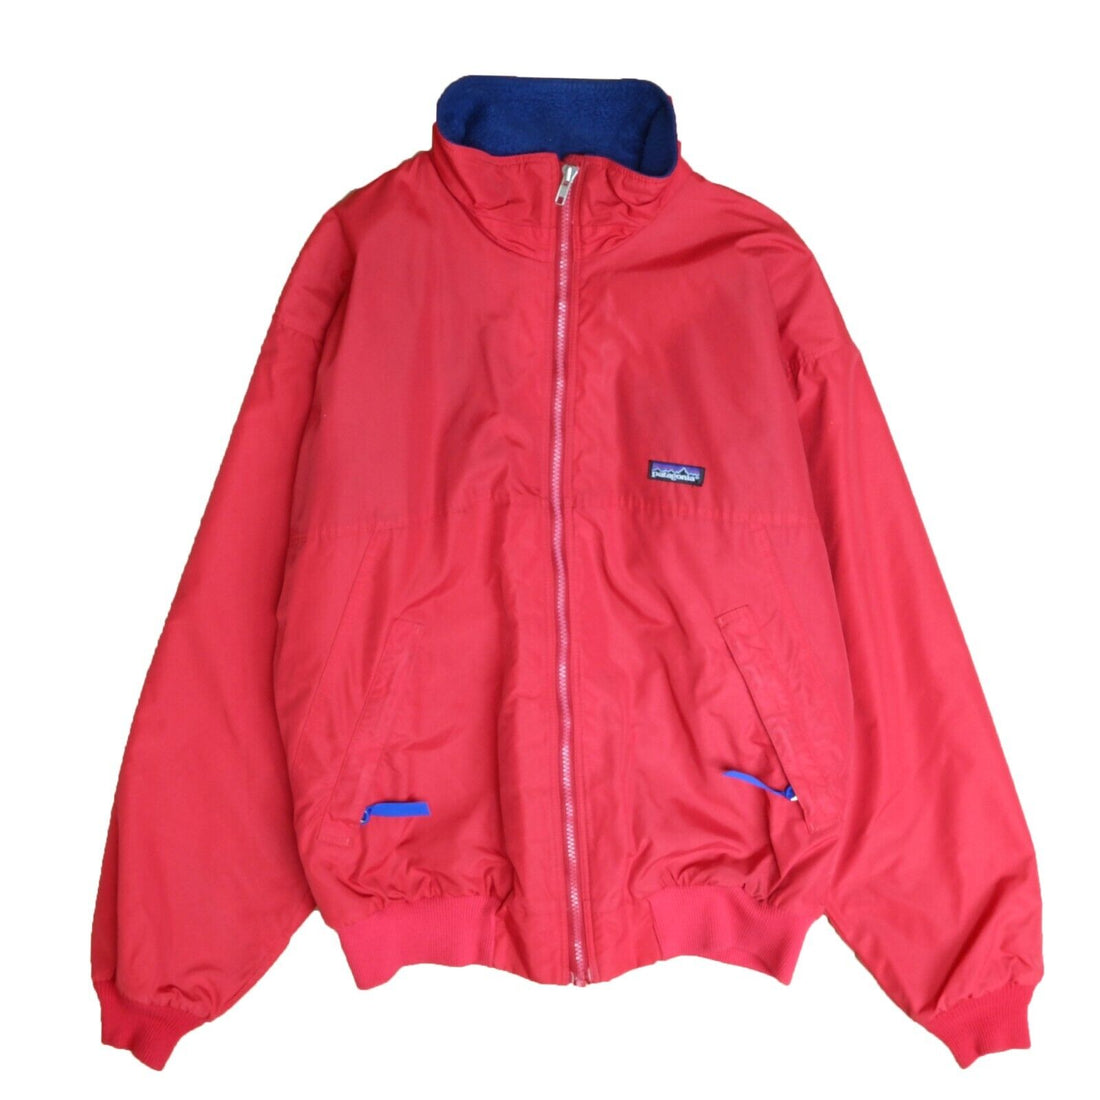 Patagonia Fleece Lined Windbreaker Jacket Vintage Red Medium Women